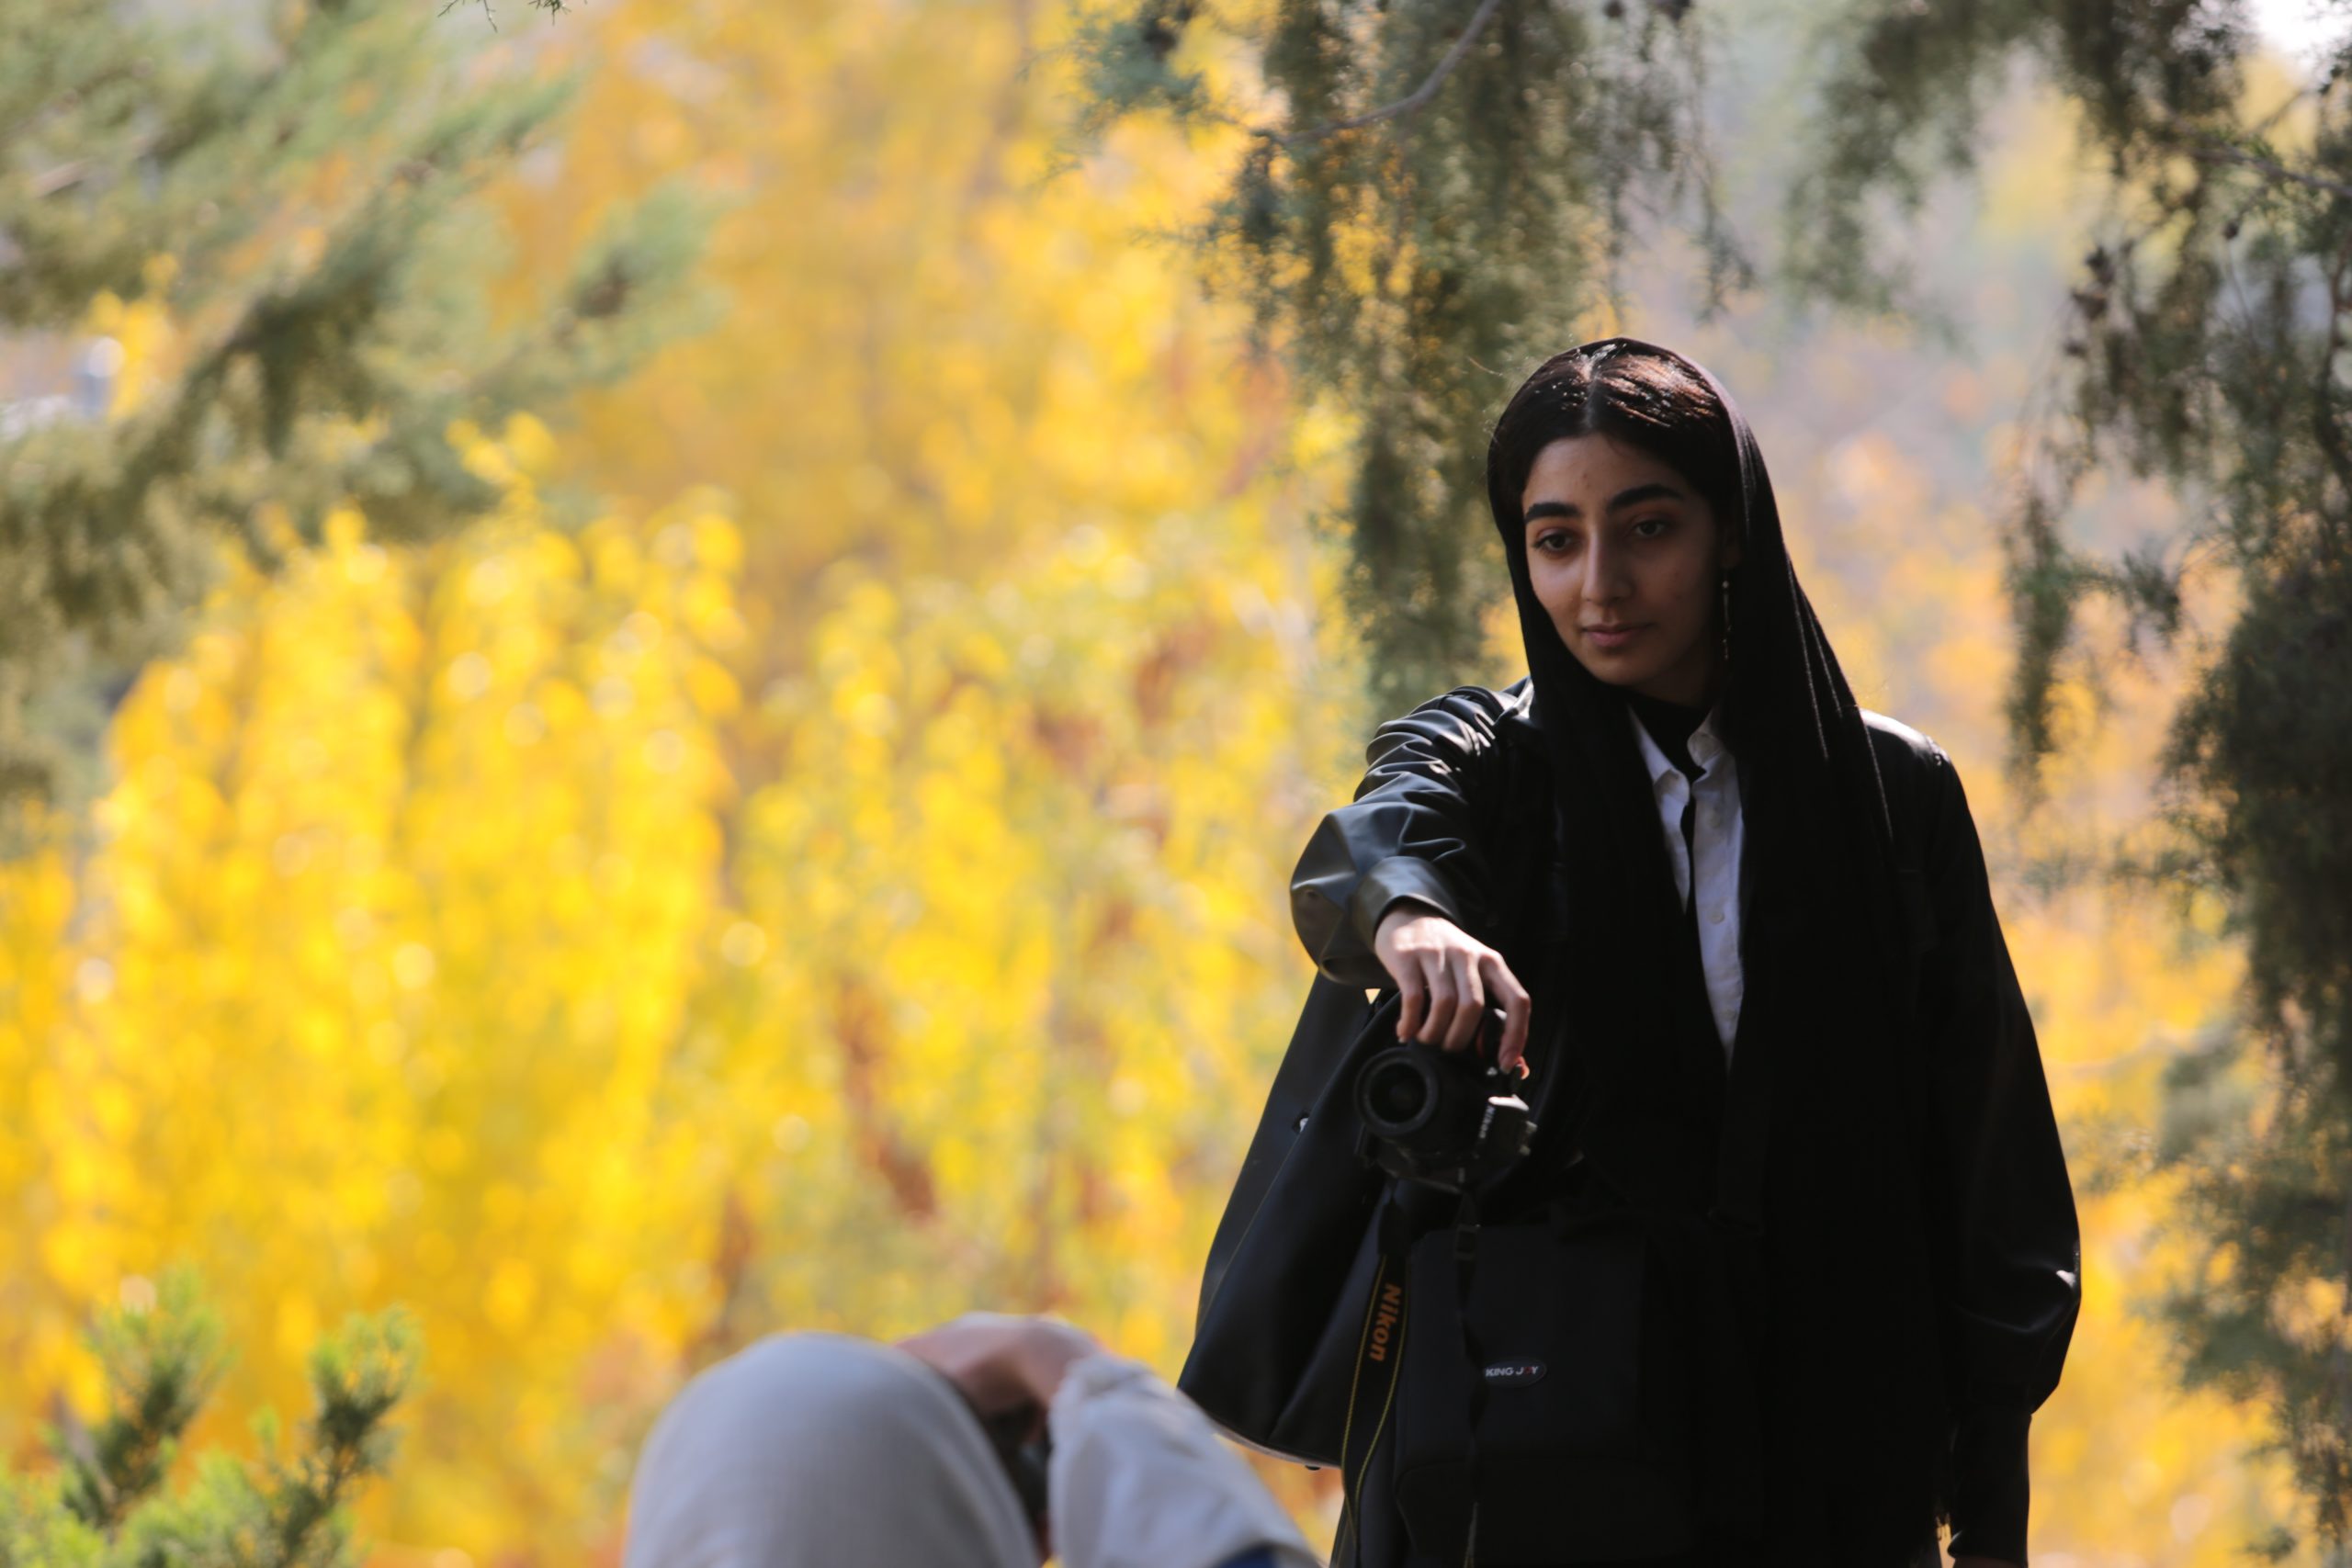 دورهمی _ هشتادوششمین دورهمی عکاسی در پارک طالقانی تهران برگزار شد. 